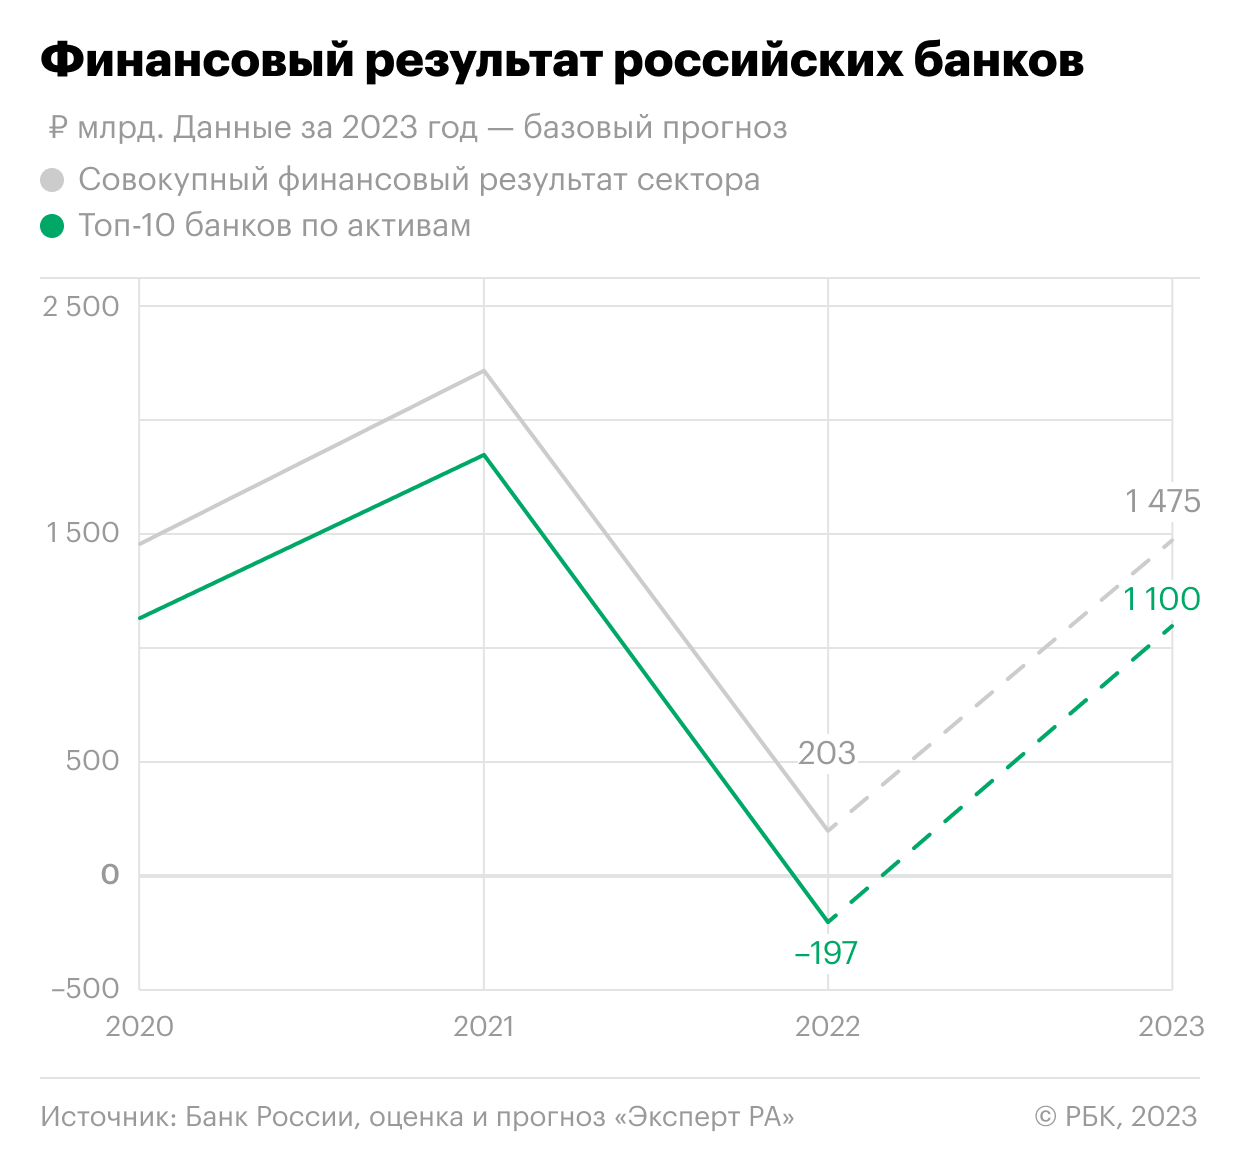 Как поменяется прибыль российских банков в ближайшие годы. Инфографика